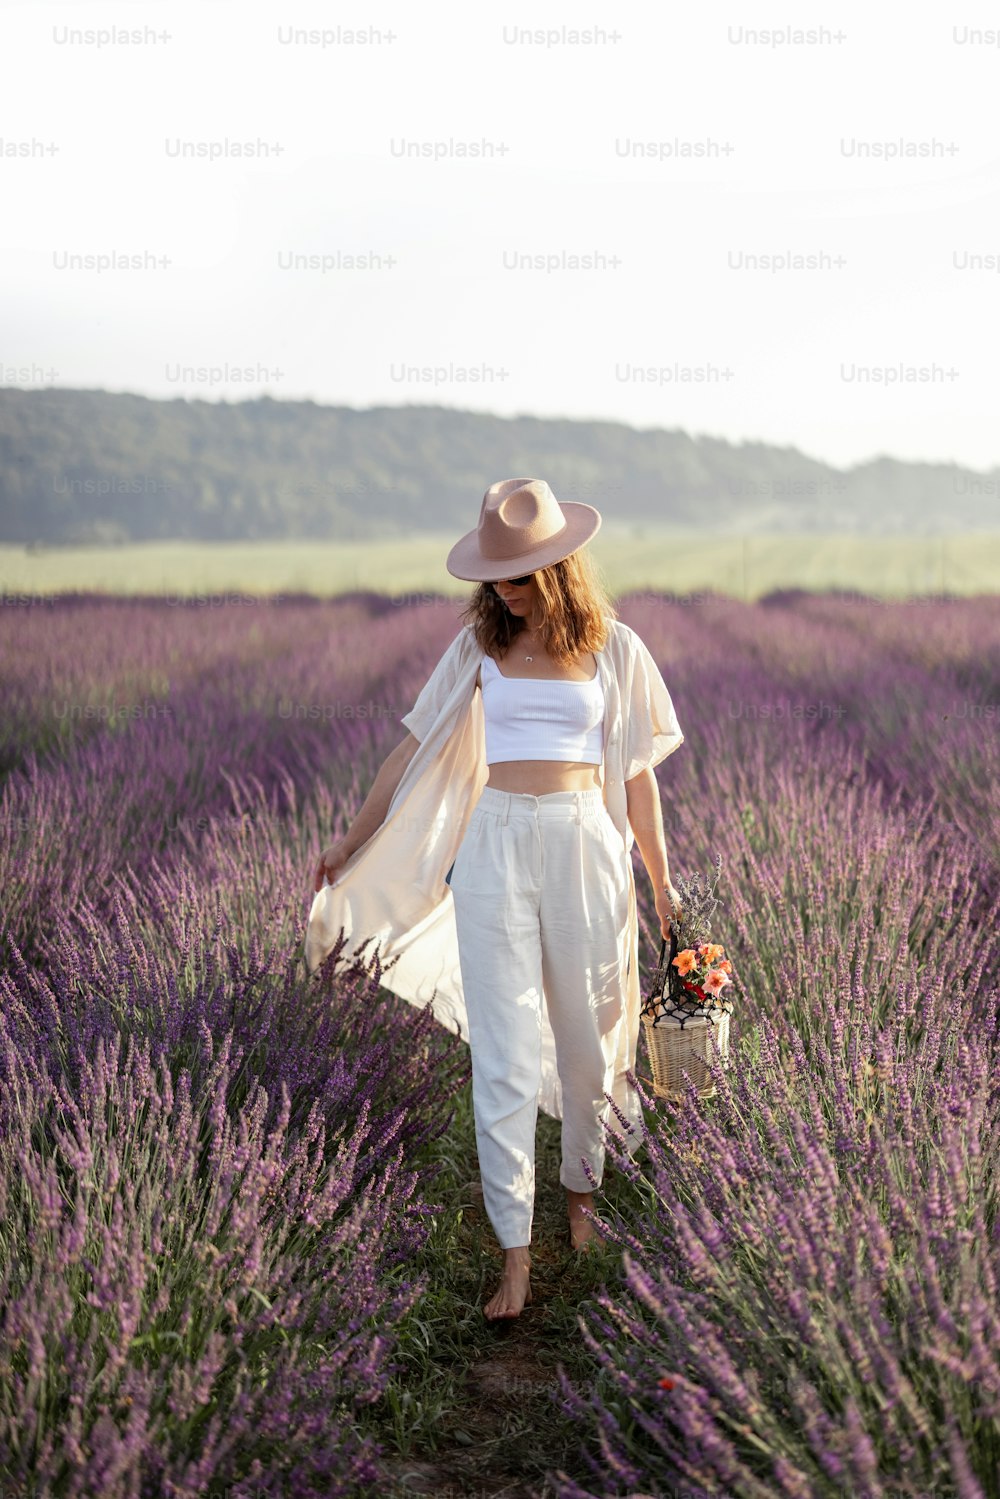 若い女性は、紫色の花の花束とラベンダー畑を歩き、自然の美しさを楽しんでいます。落ち着きとマインドフルなコンセプト。コピースペース